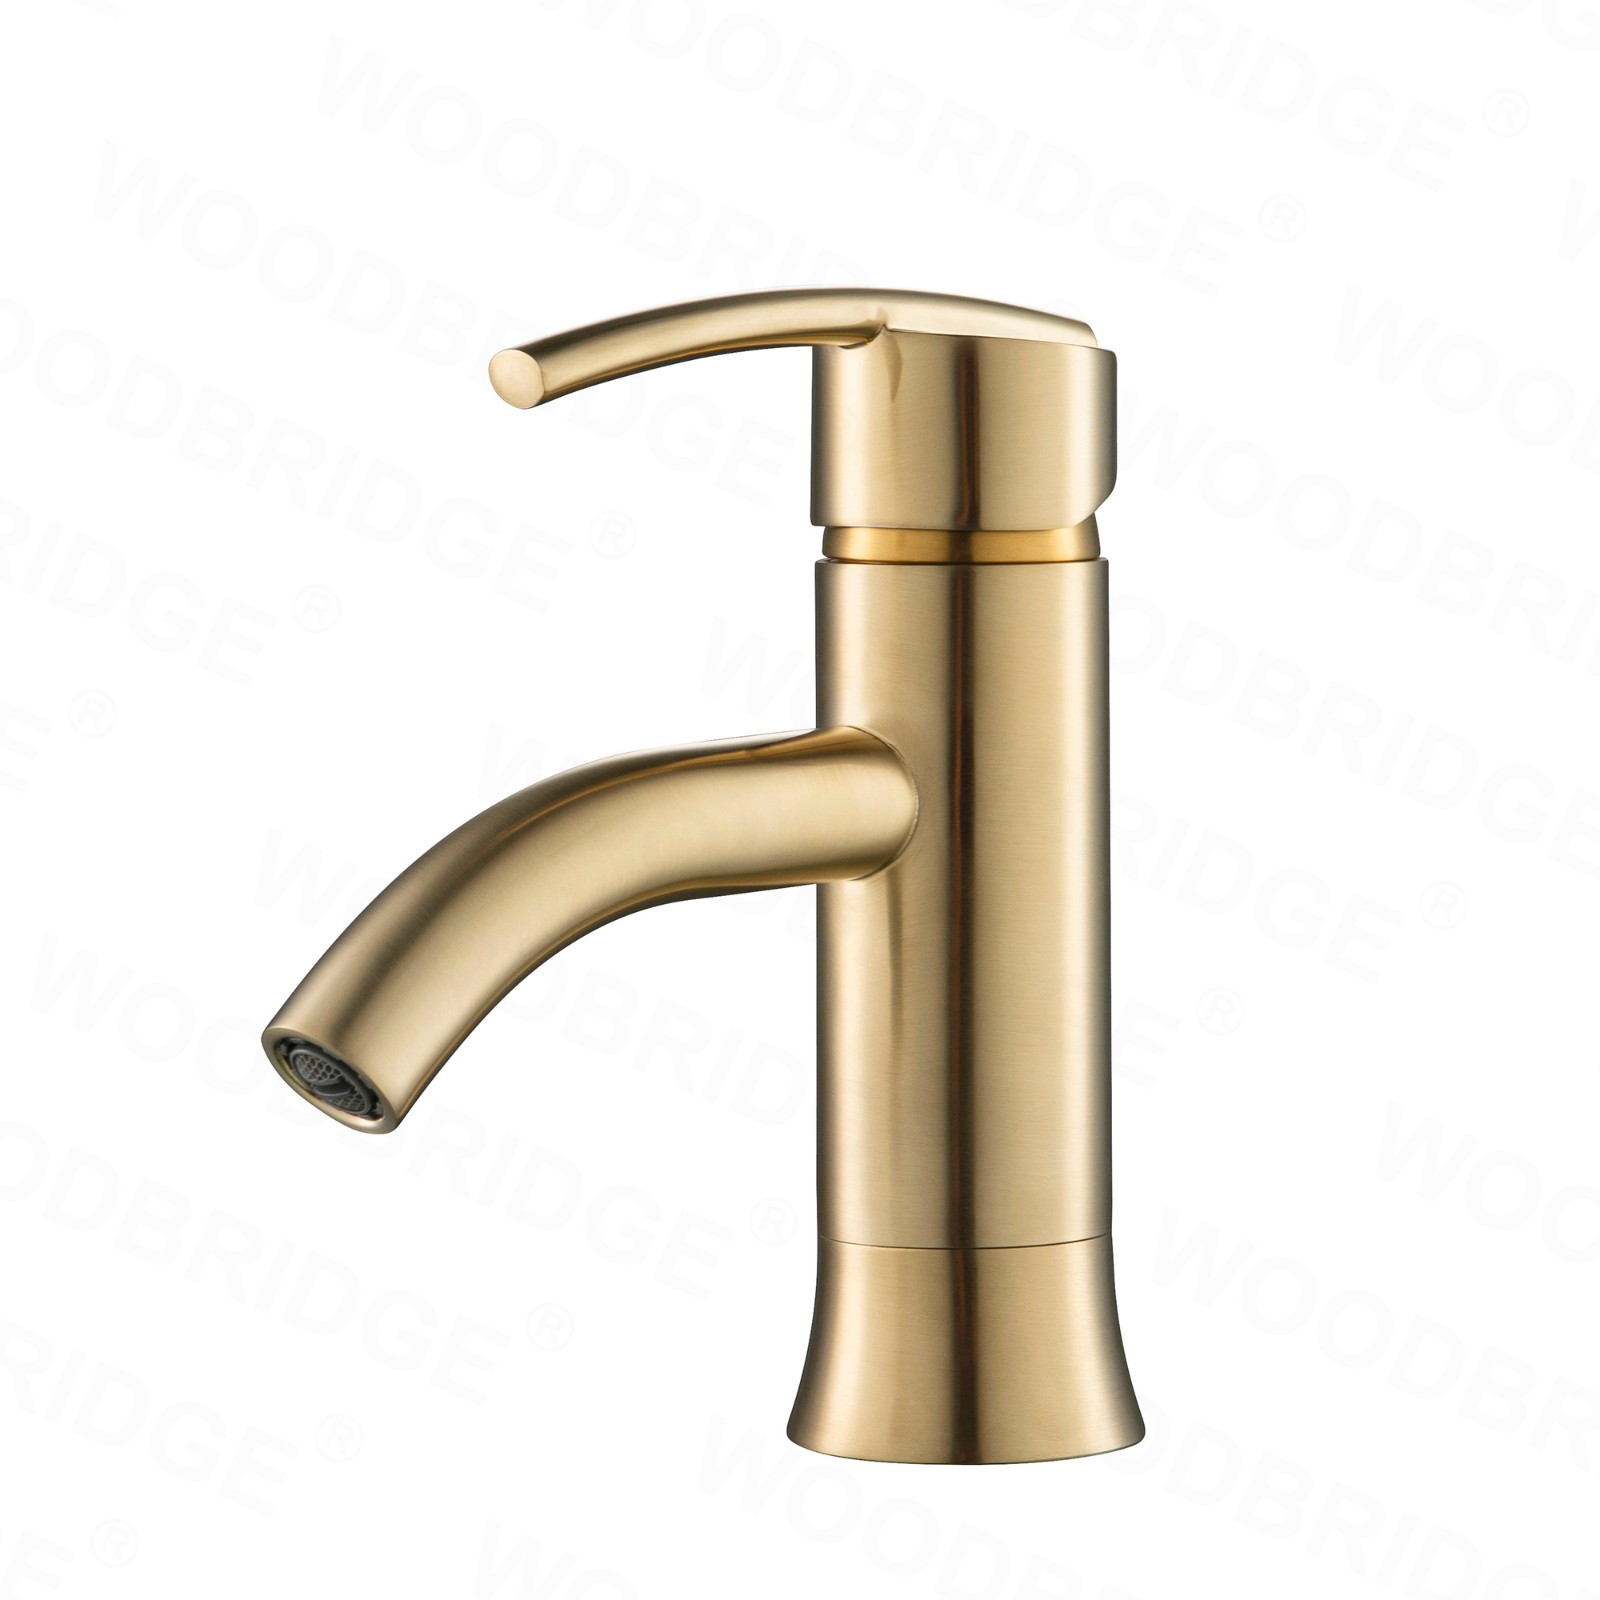  WOODBRIDGE WB201901BG Single Hole Single Handle Lavatory Faucet, Brushed Gold_6363